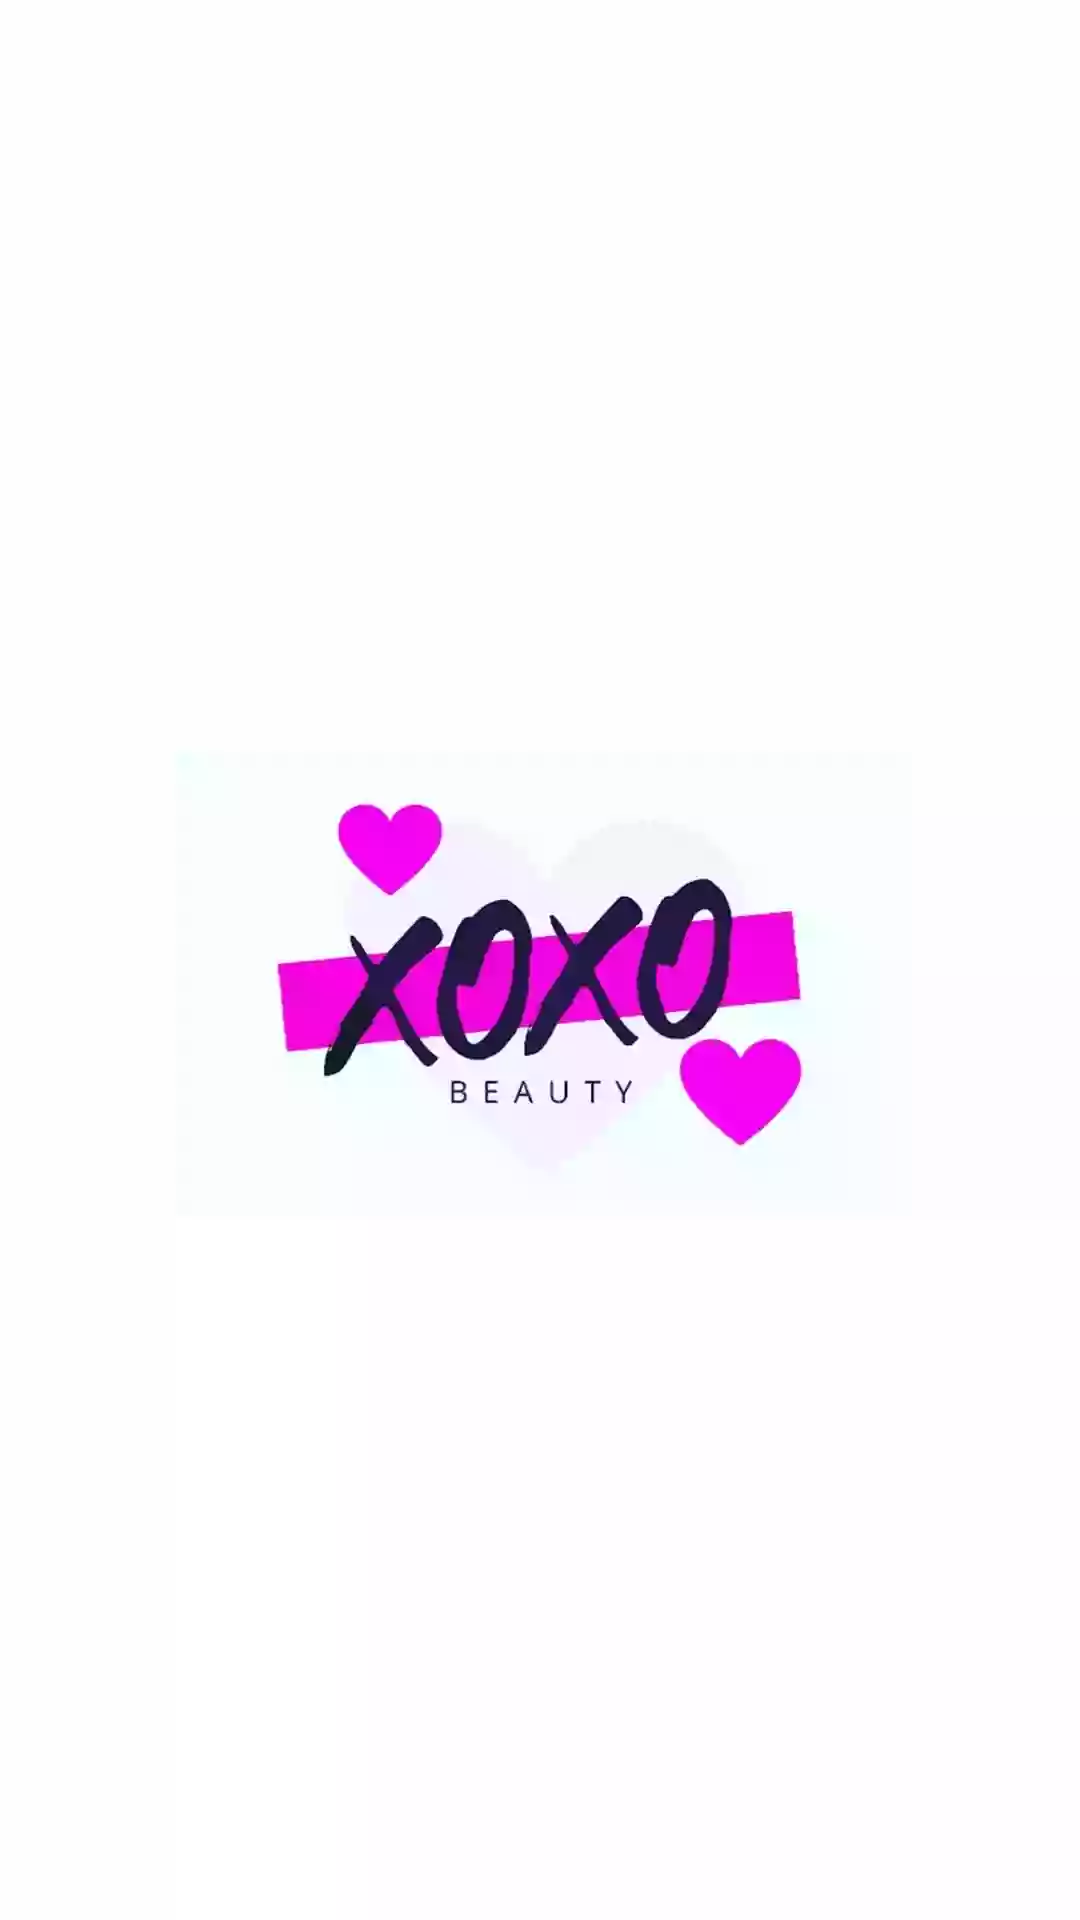 XOXO Beauty